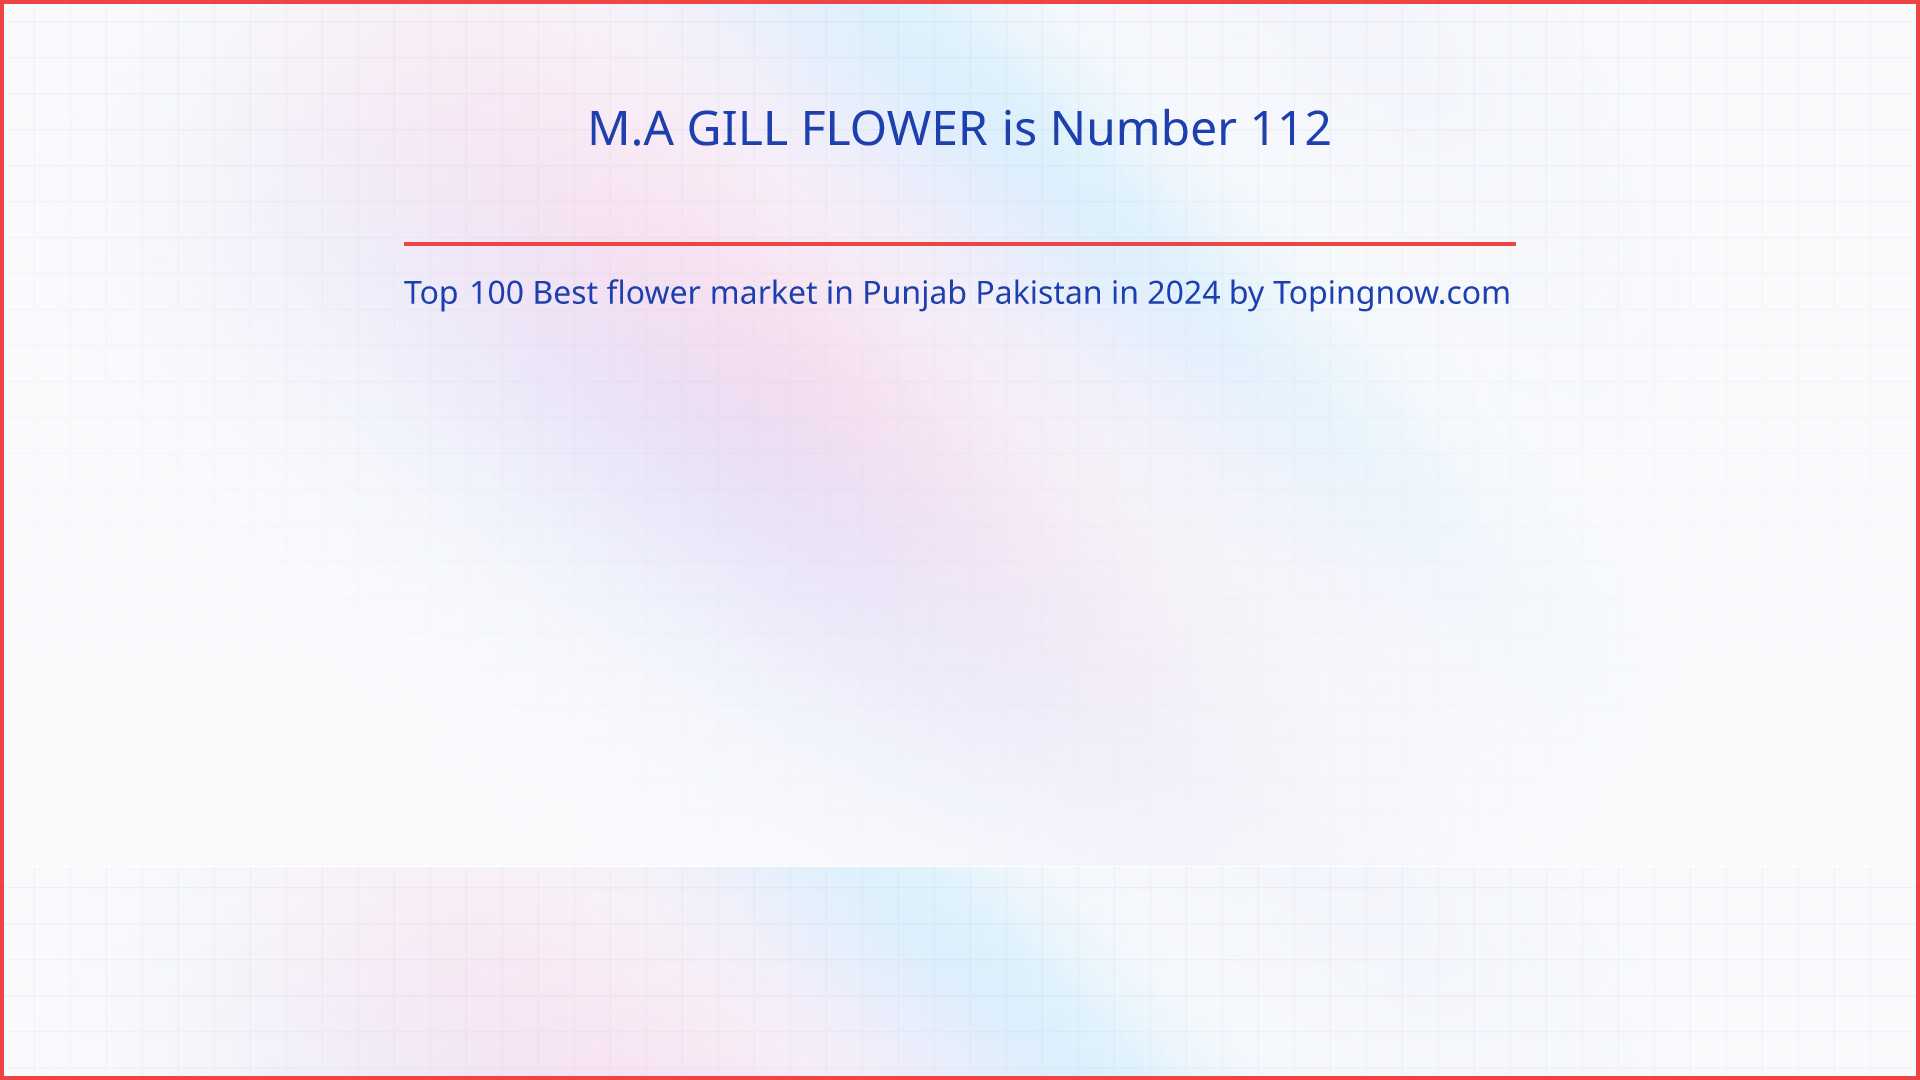 M.A GILL FLOWER: Top 100 Best flower market in Punjab Pakistan in 2024